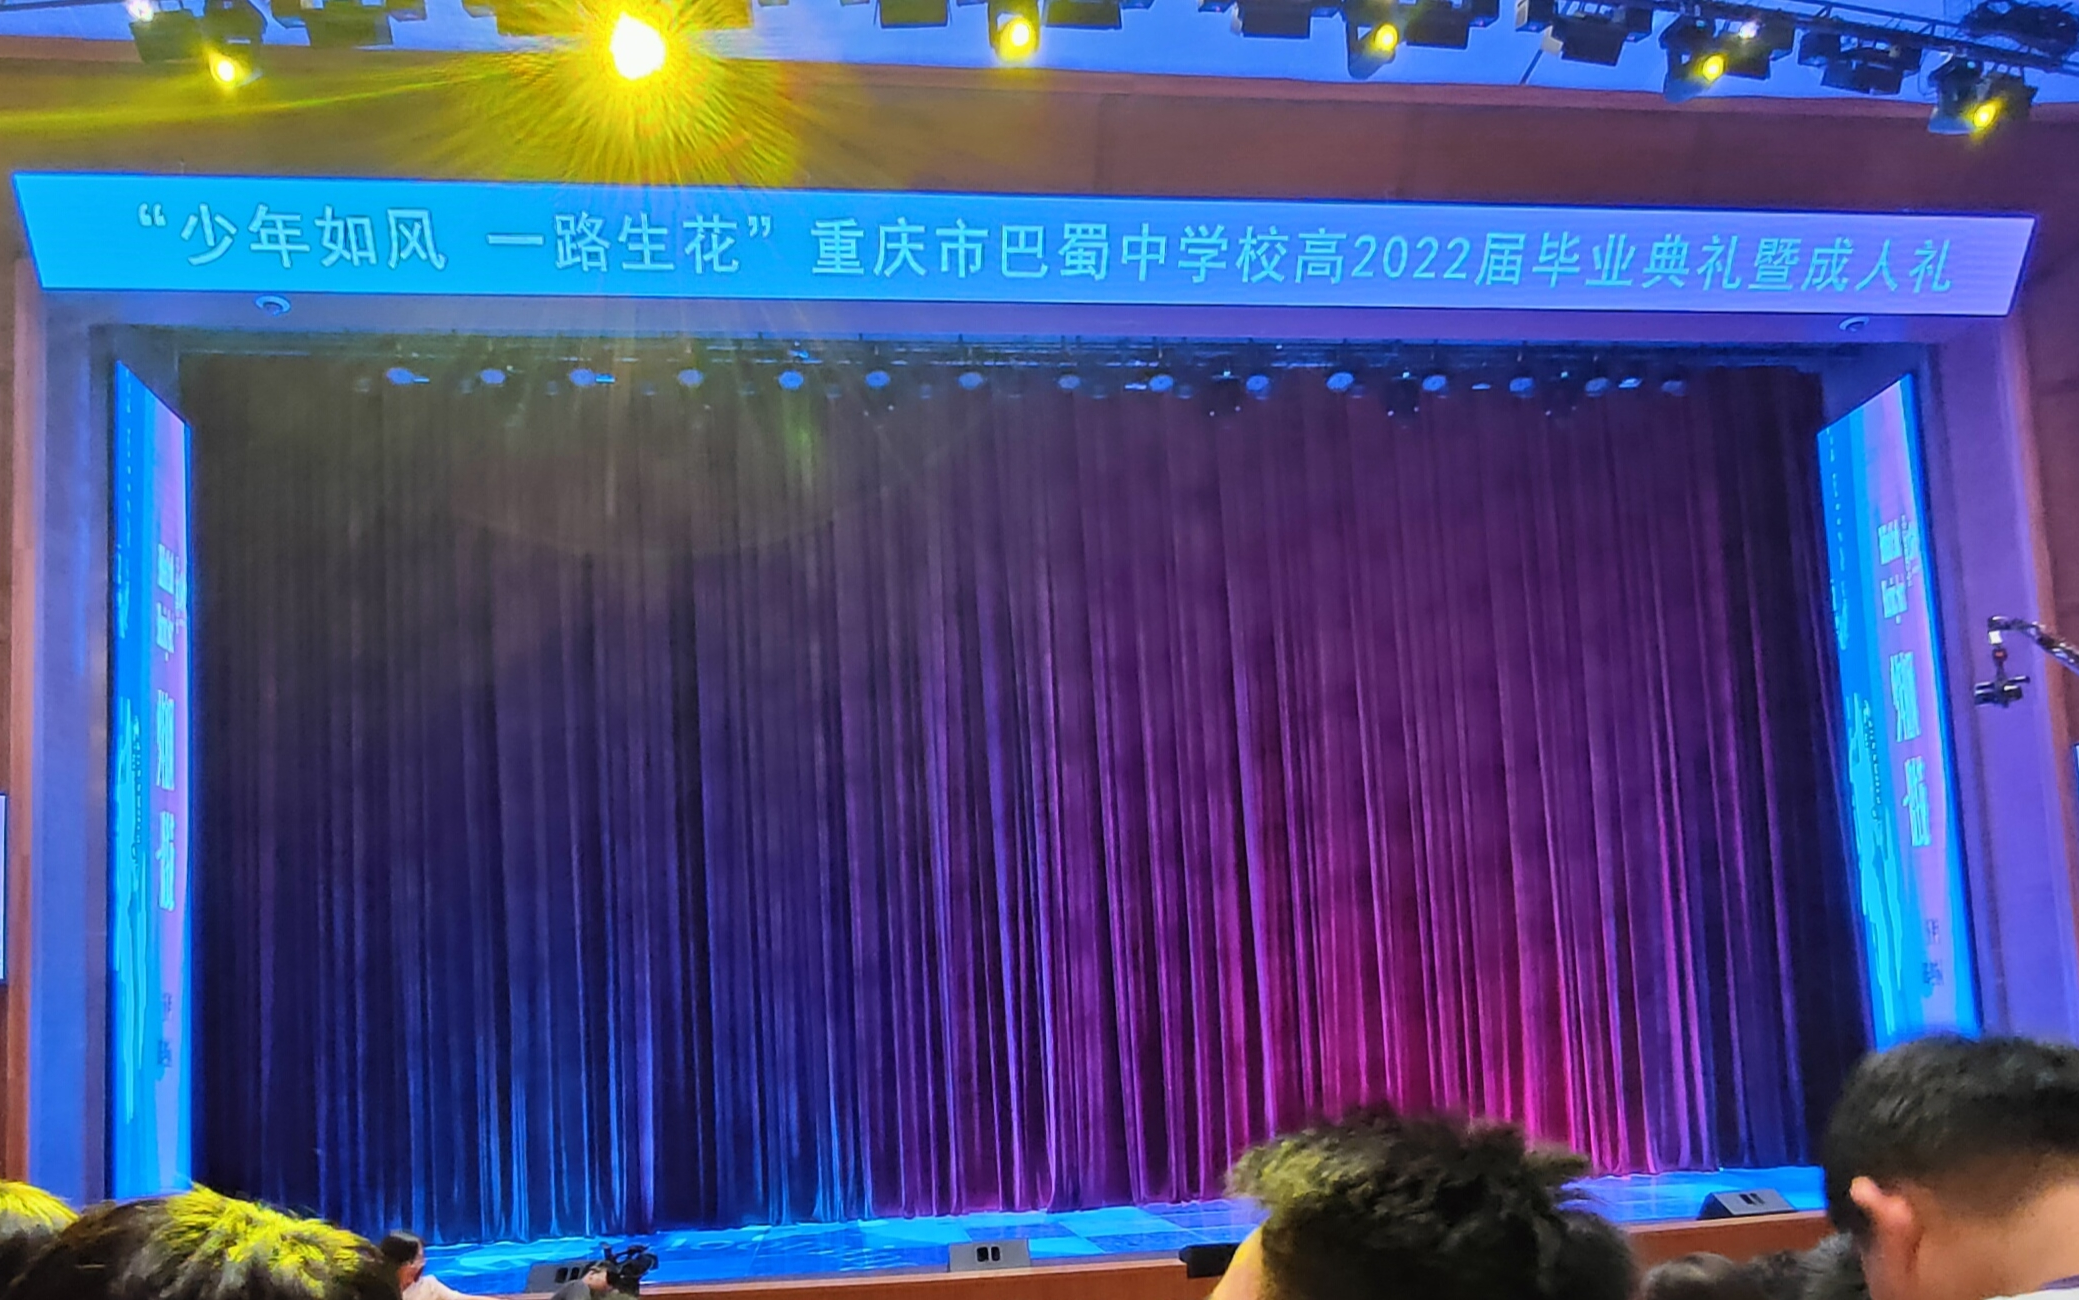 重庆市巴蜀中学高2022届毕业典礼（手机录制版）